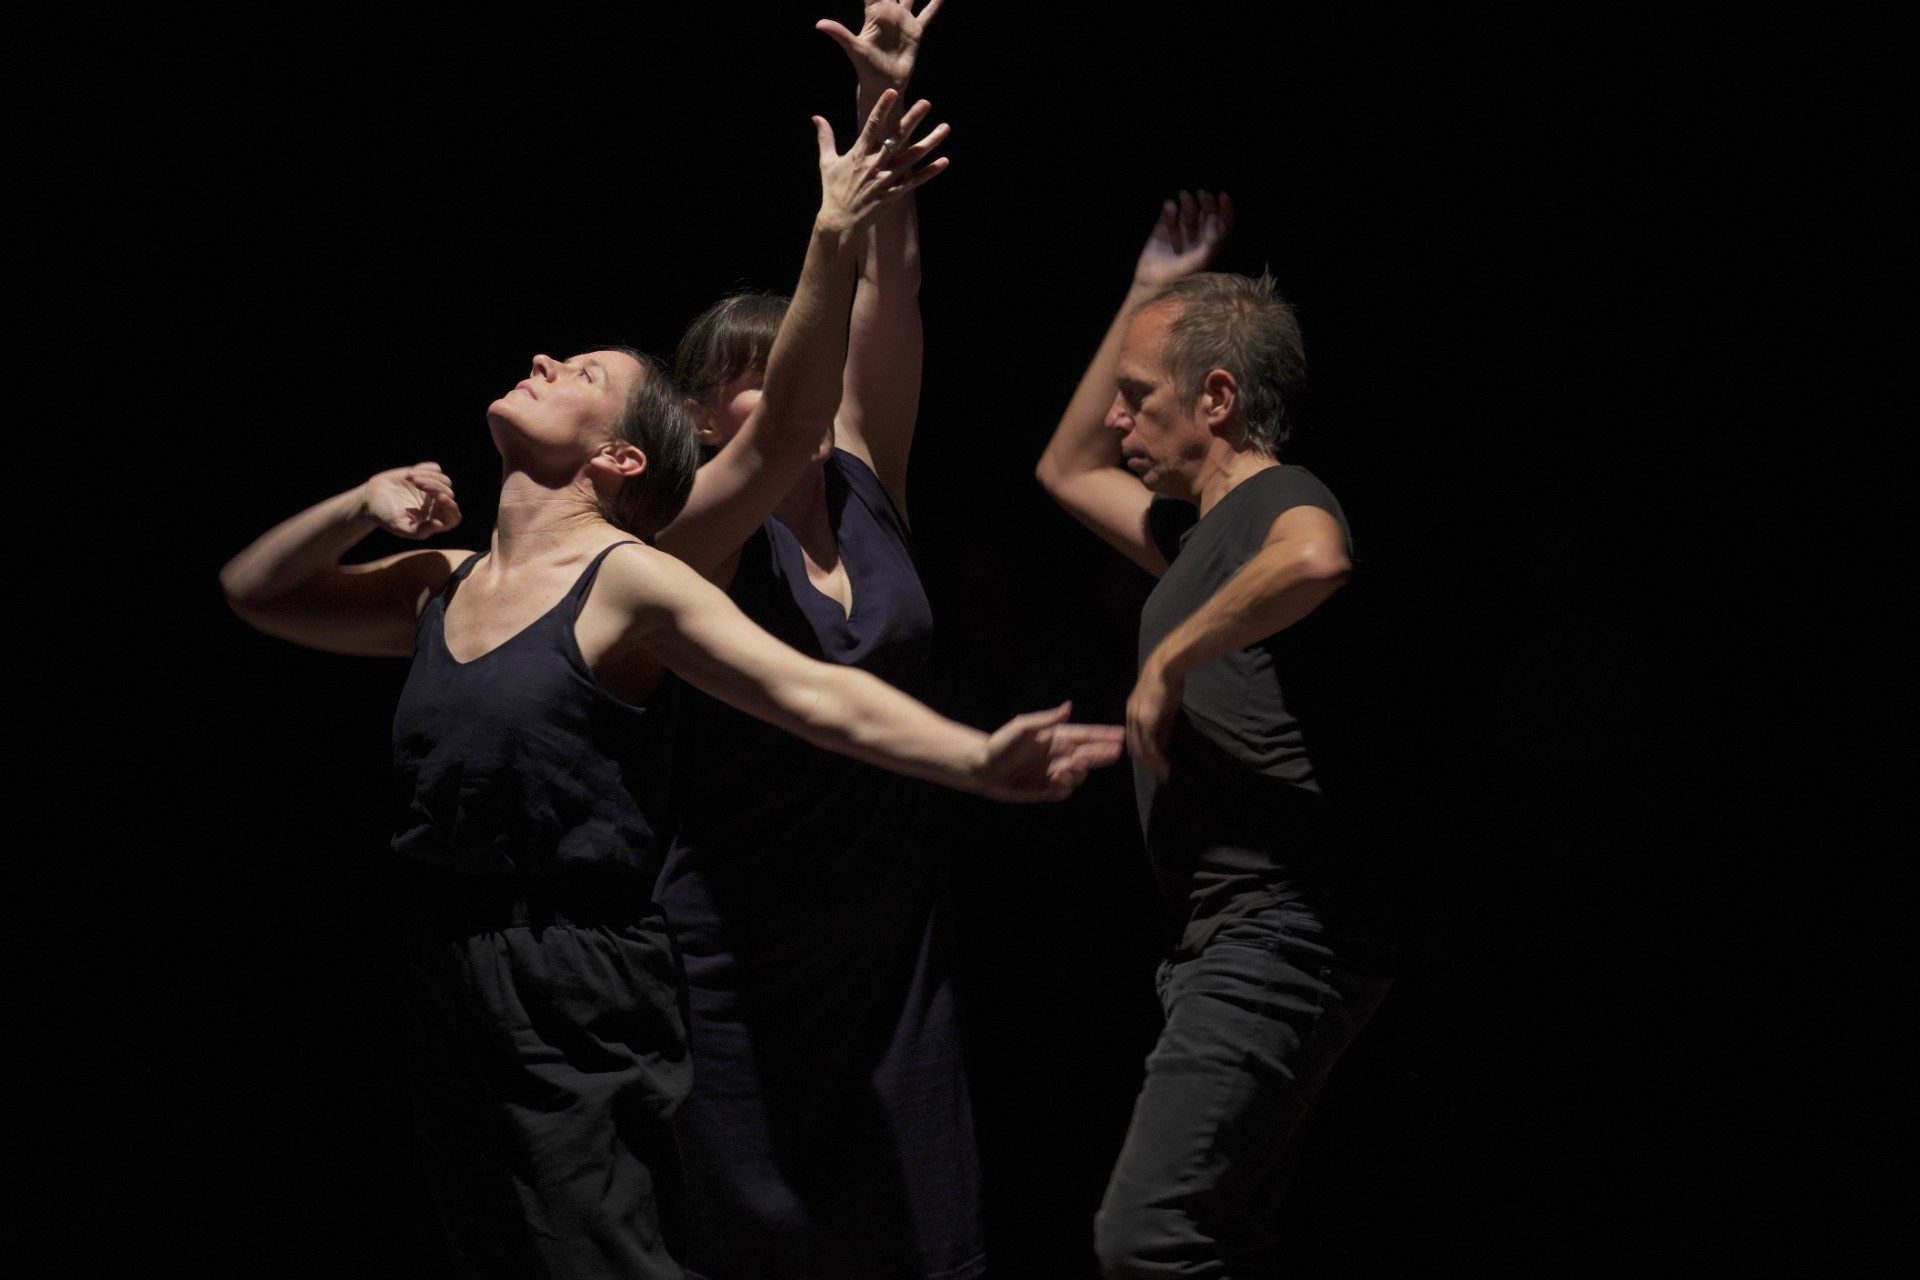 Dancers improvising movement